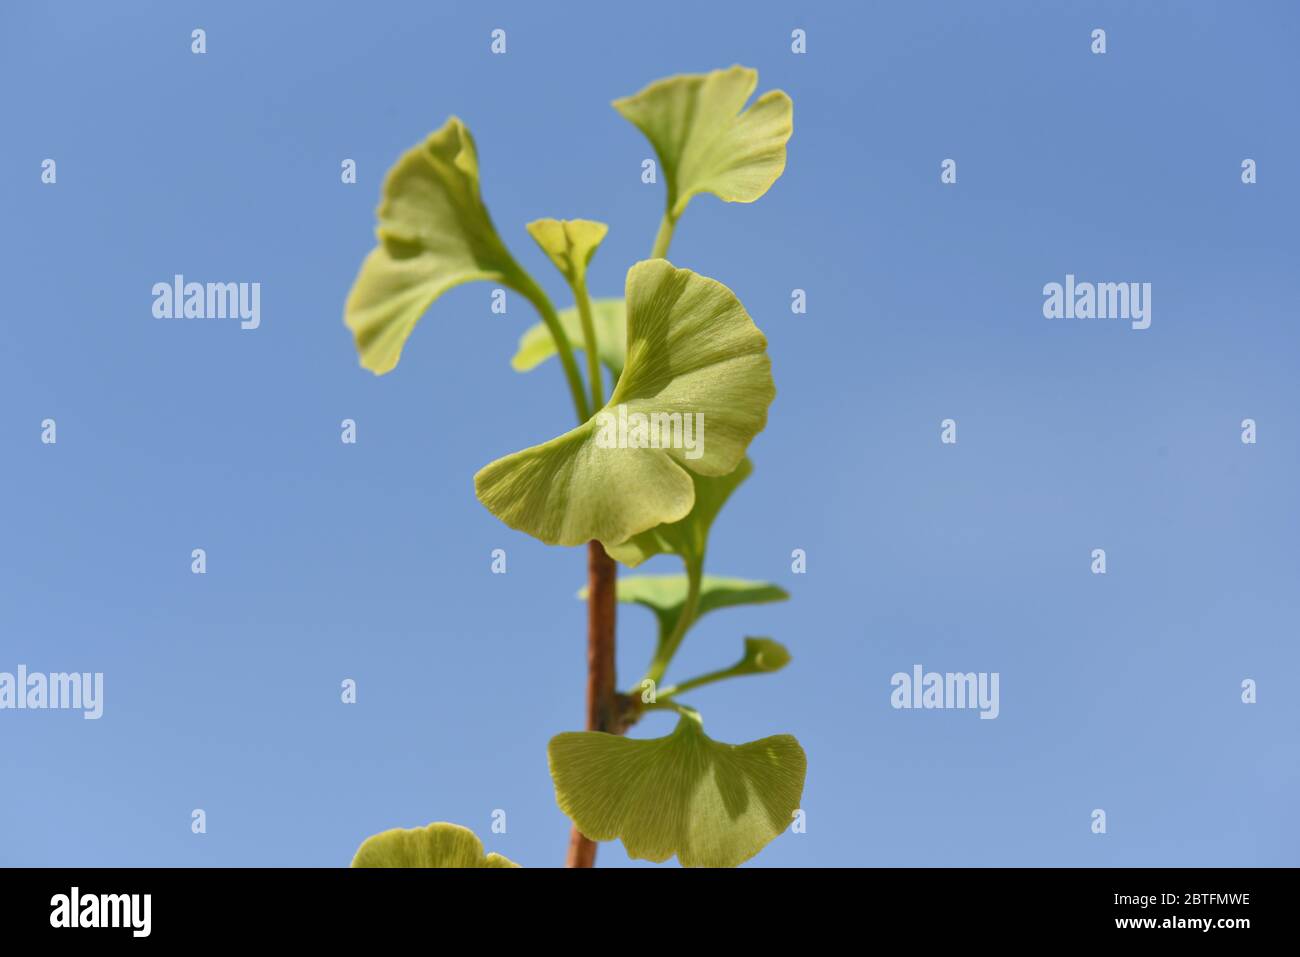 Ginkgo biloba oder Ginko ist eine in China heimische, heute weltweit angepflanzte Baumart. Ginkgo biloba or Ginko is a tree species native to China th Stock Photo